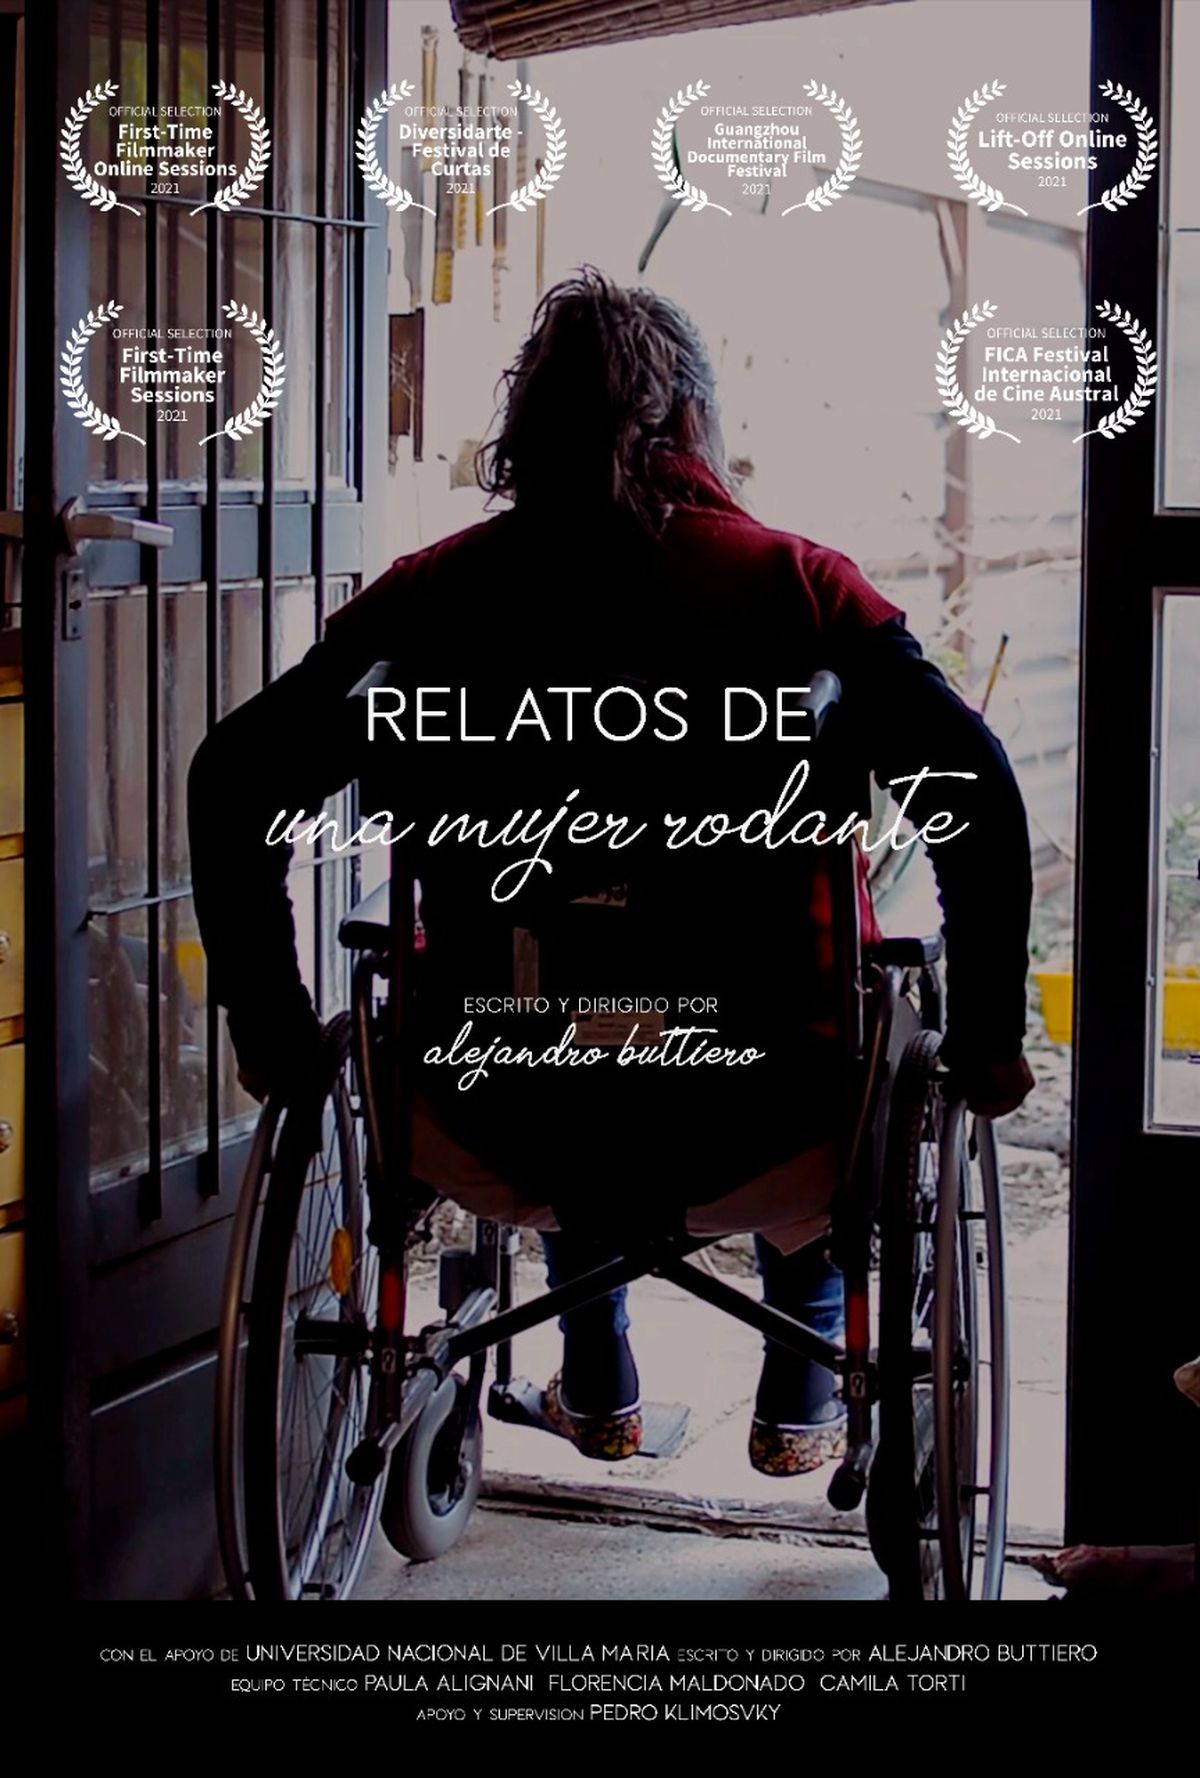 Cine bajo las estrellas: hay que naturalizar más la discapacidad